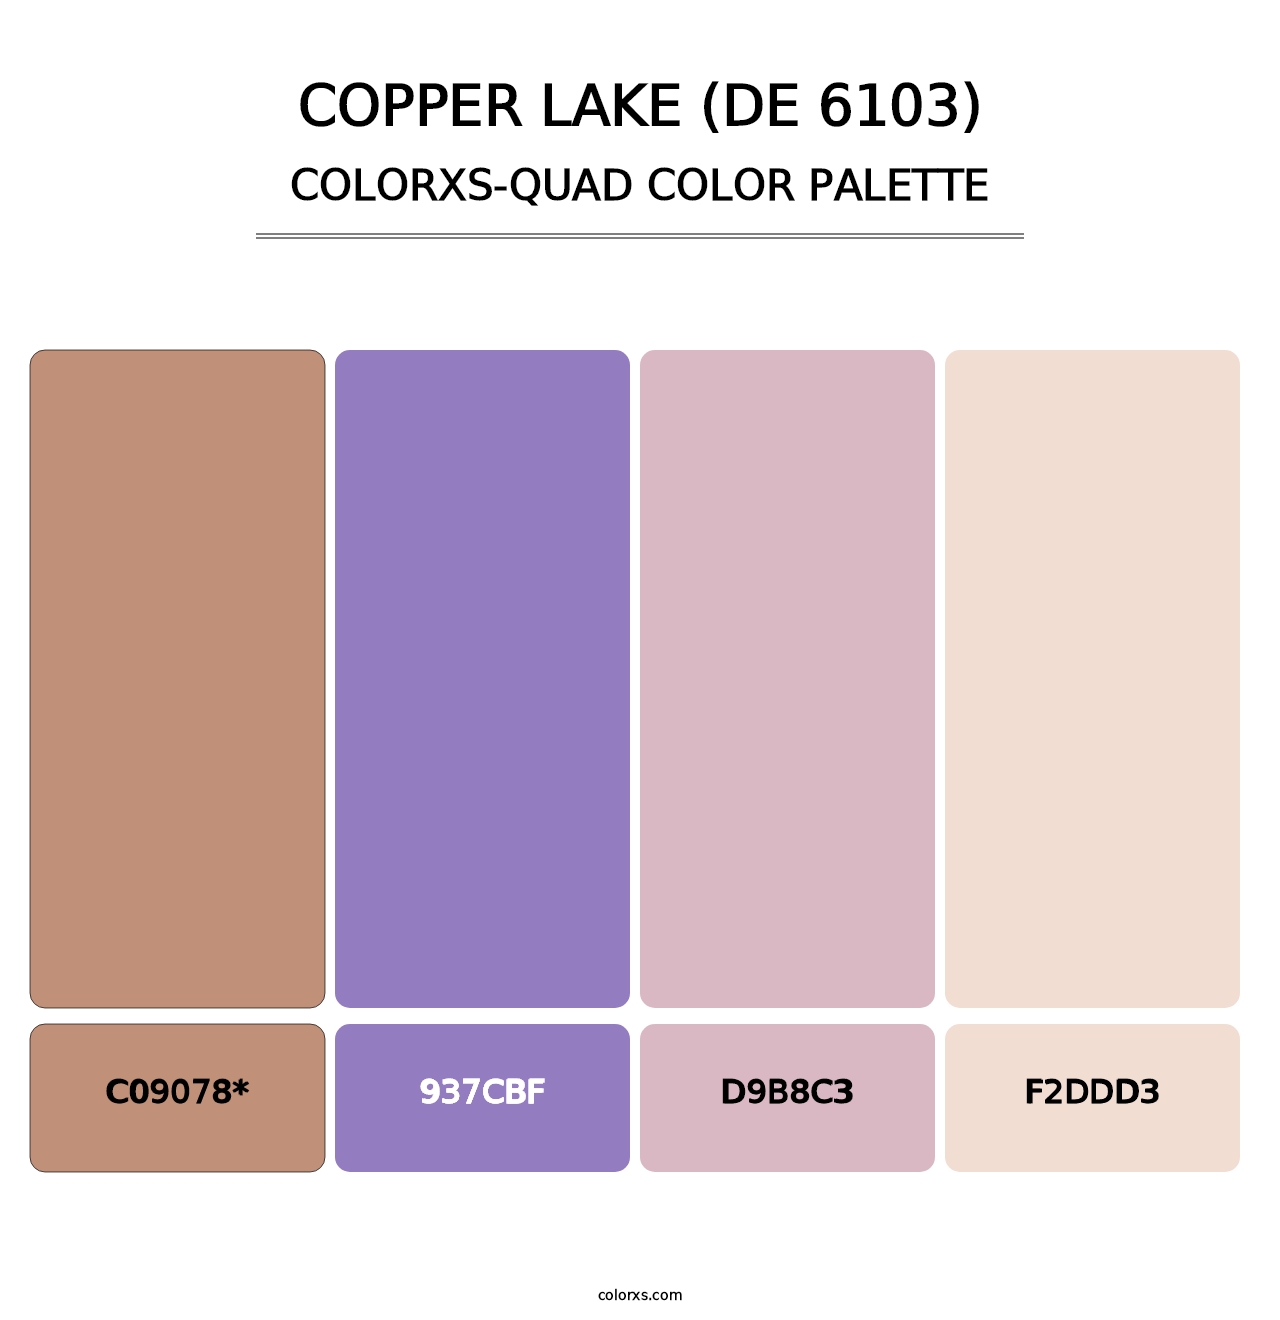 Copper Lake (DE 6103) - Colorxs Quad Palette